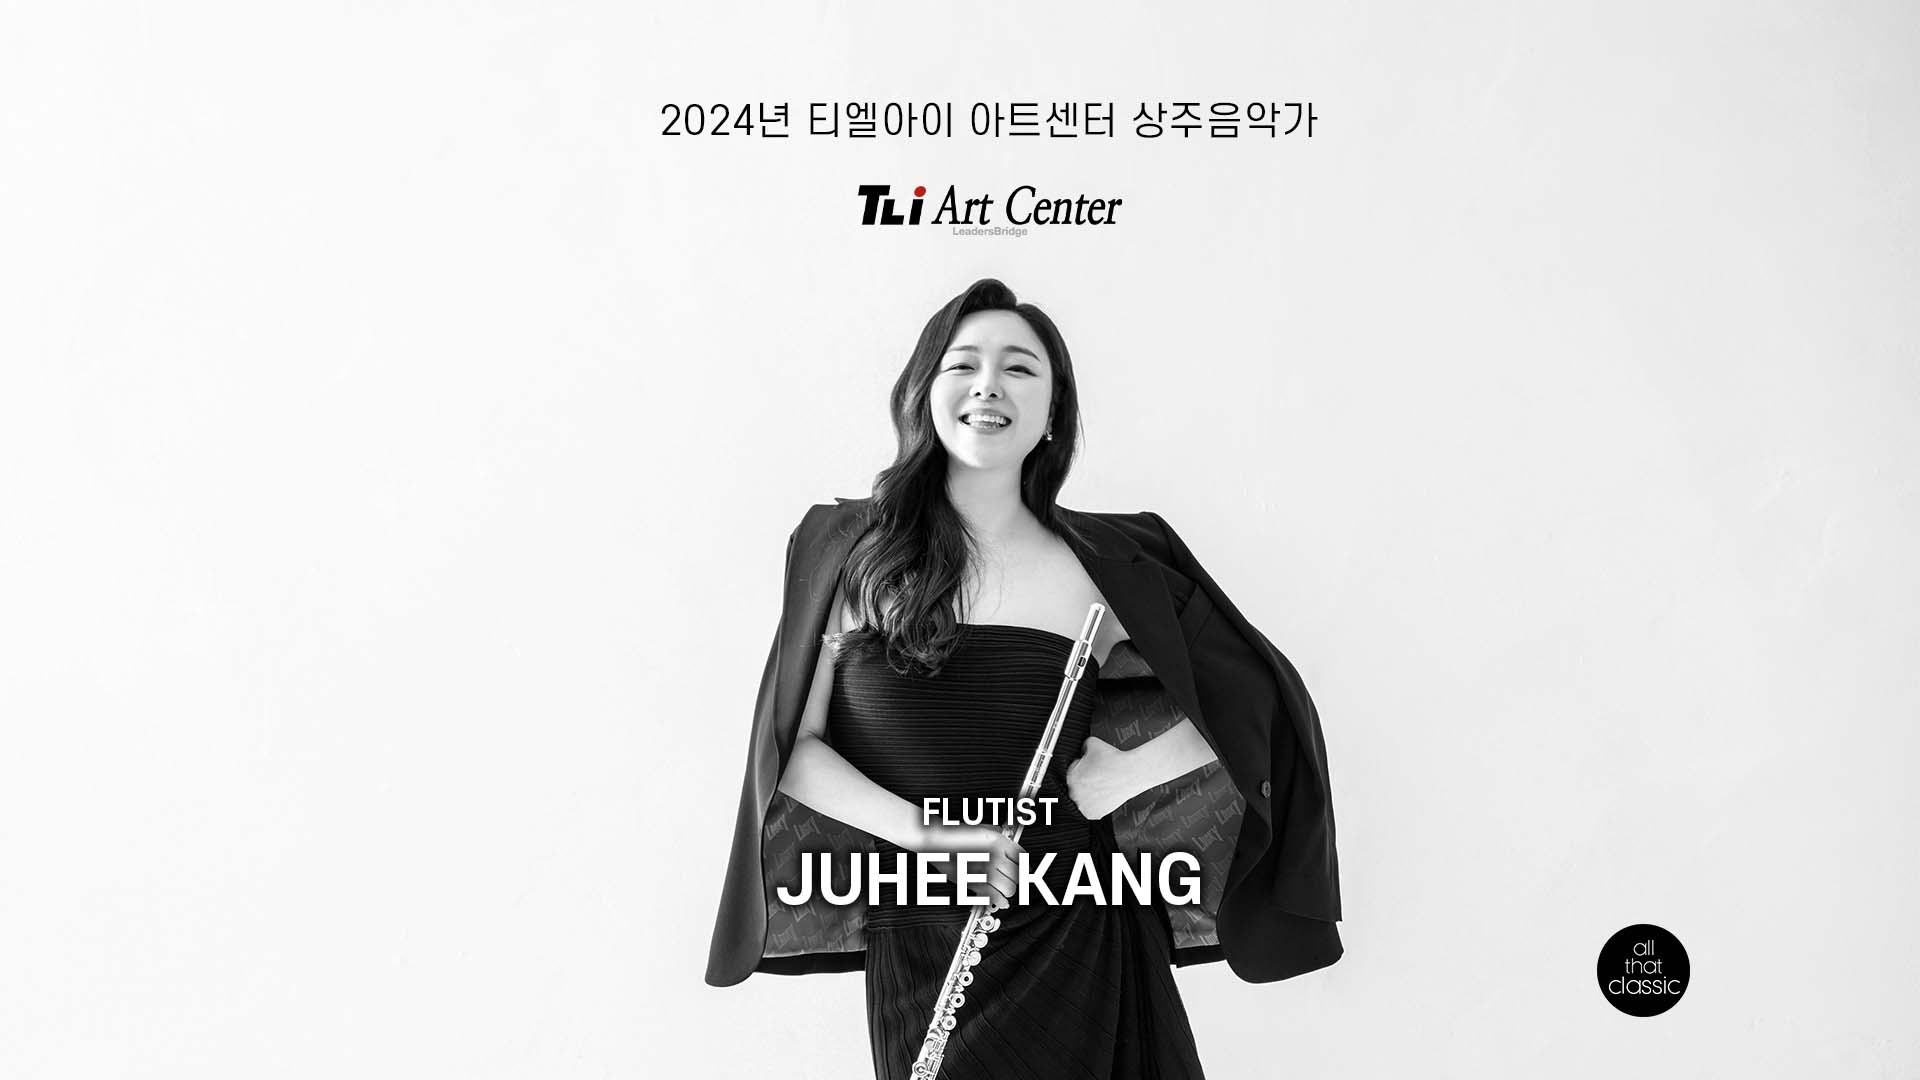 2024 티엘아이 아트센터 상주음악가 - 플루티스트 강주희